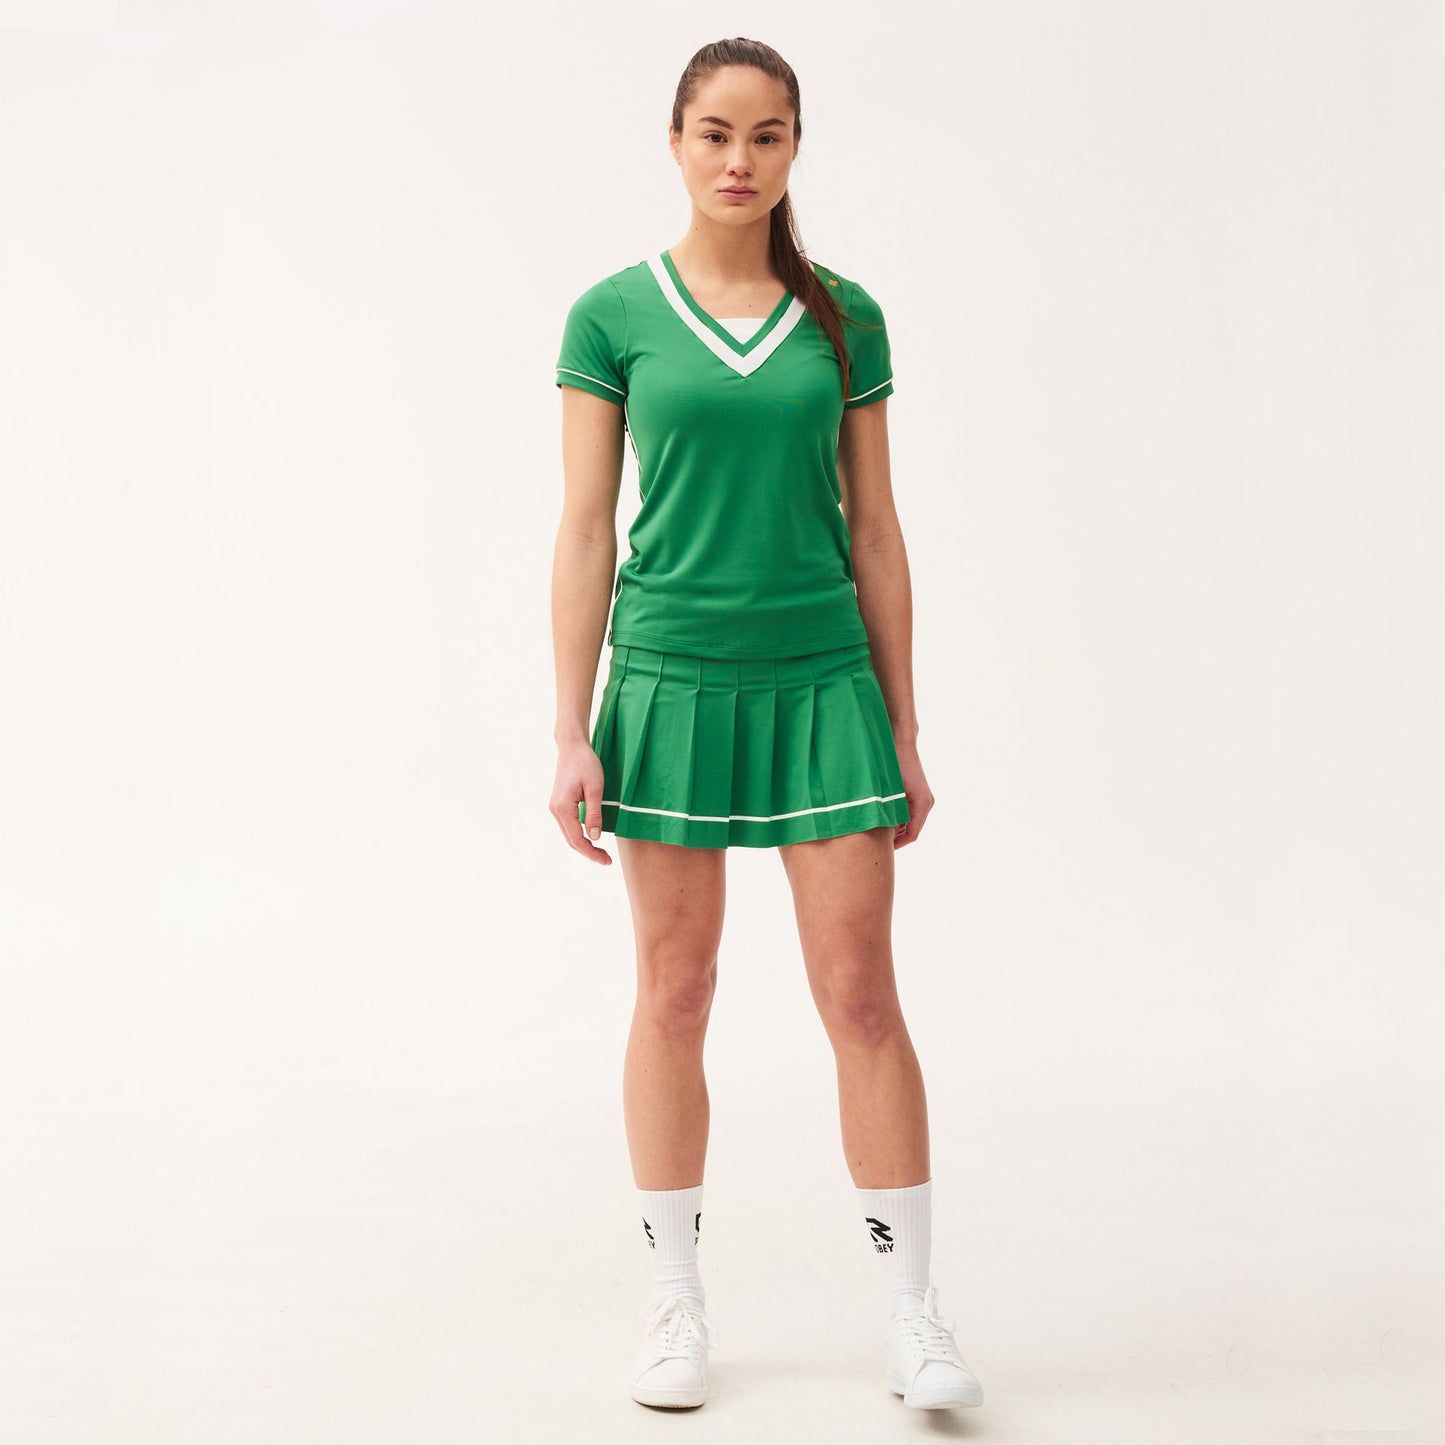 Robey Match Women's Tennis Shirt Green (4)